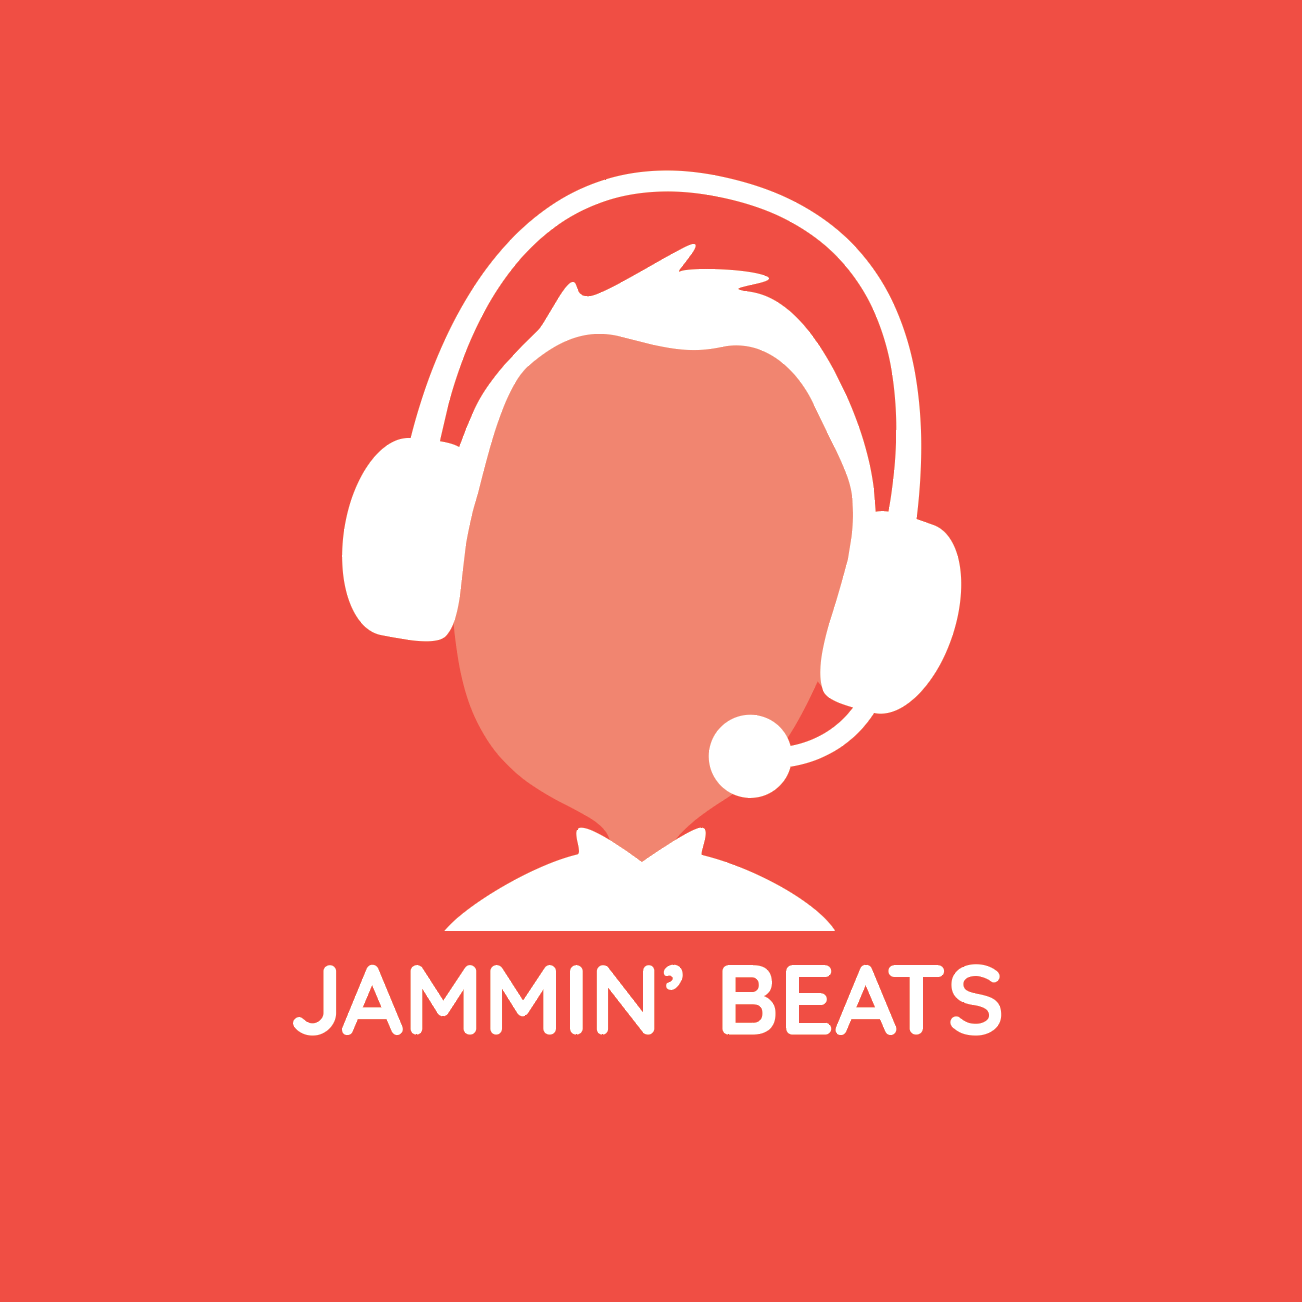 Jammin' beats